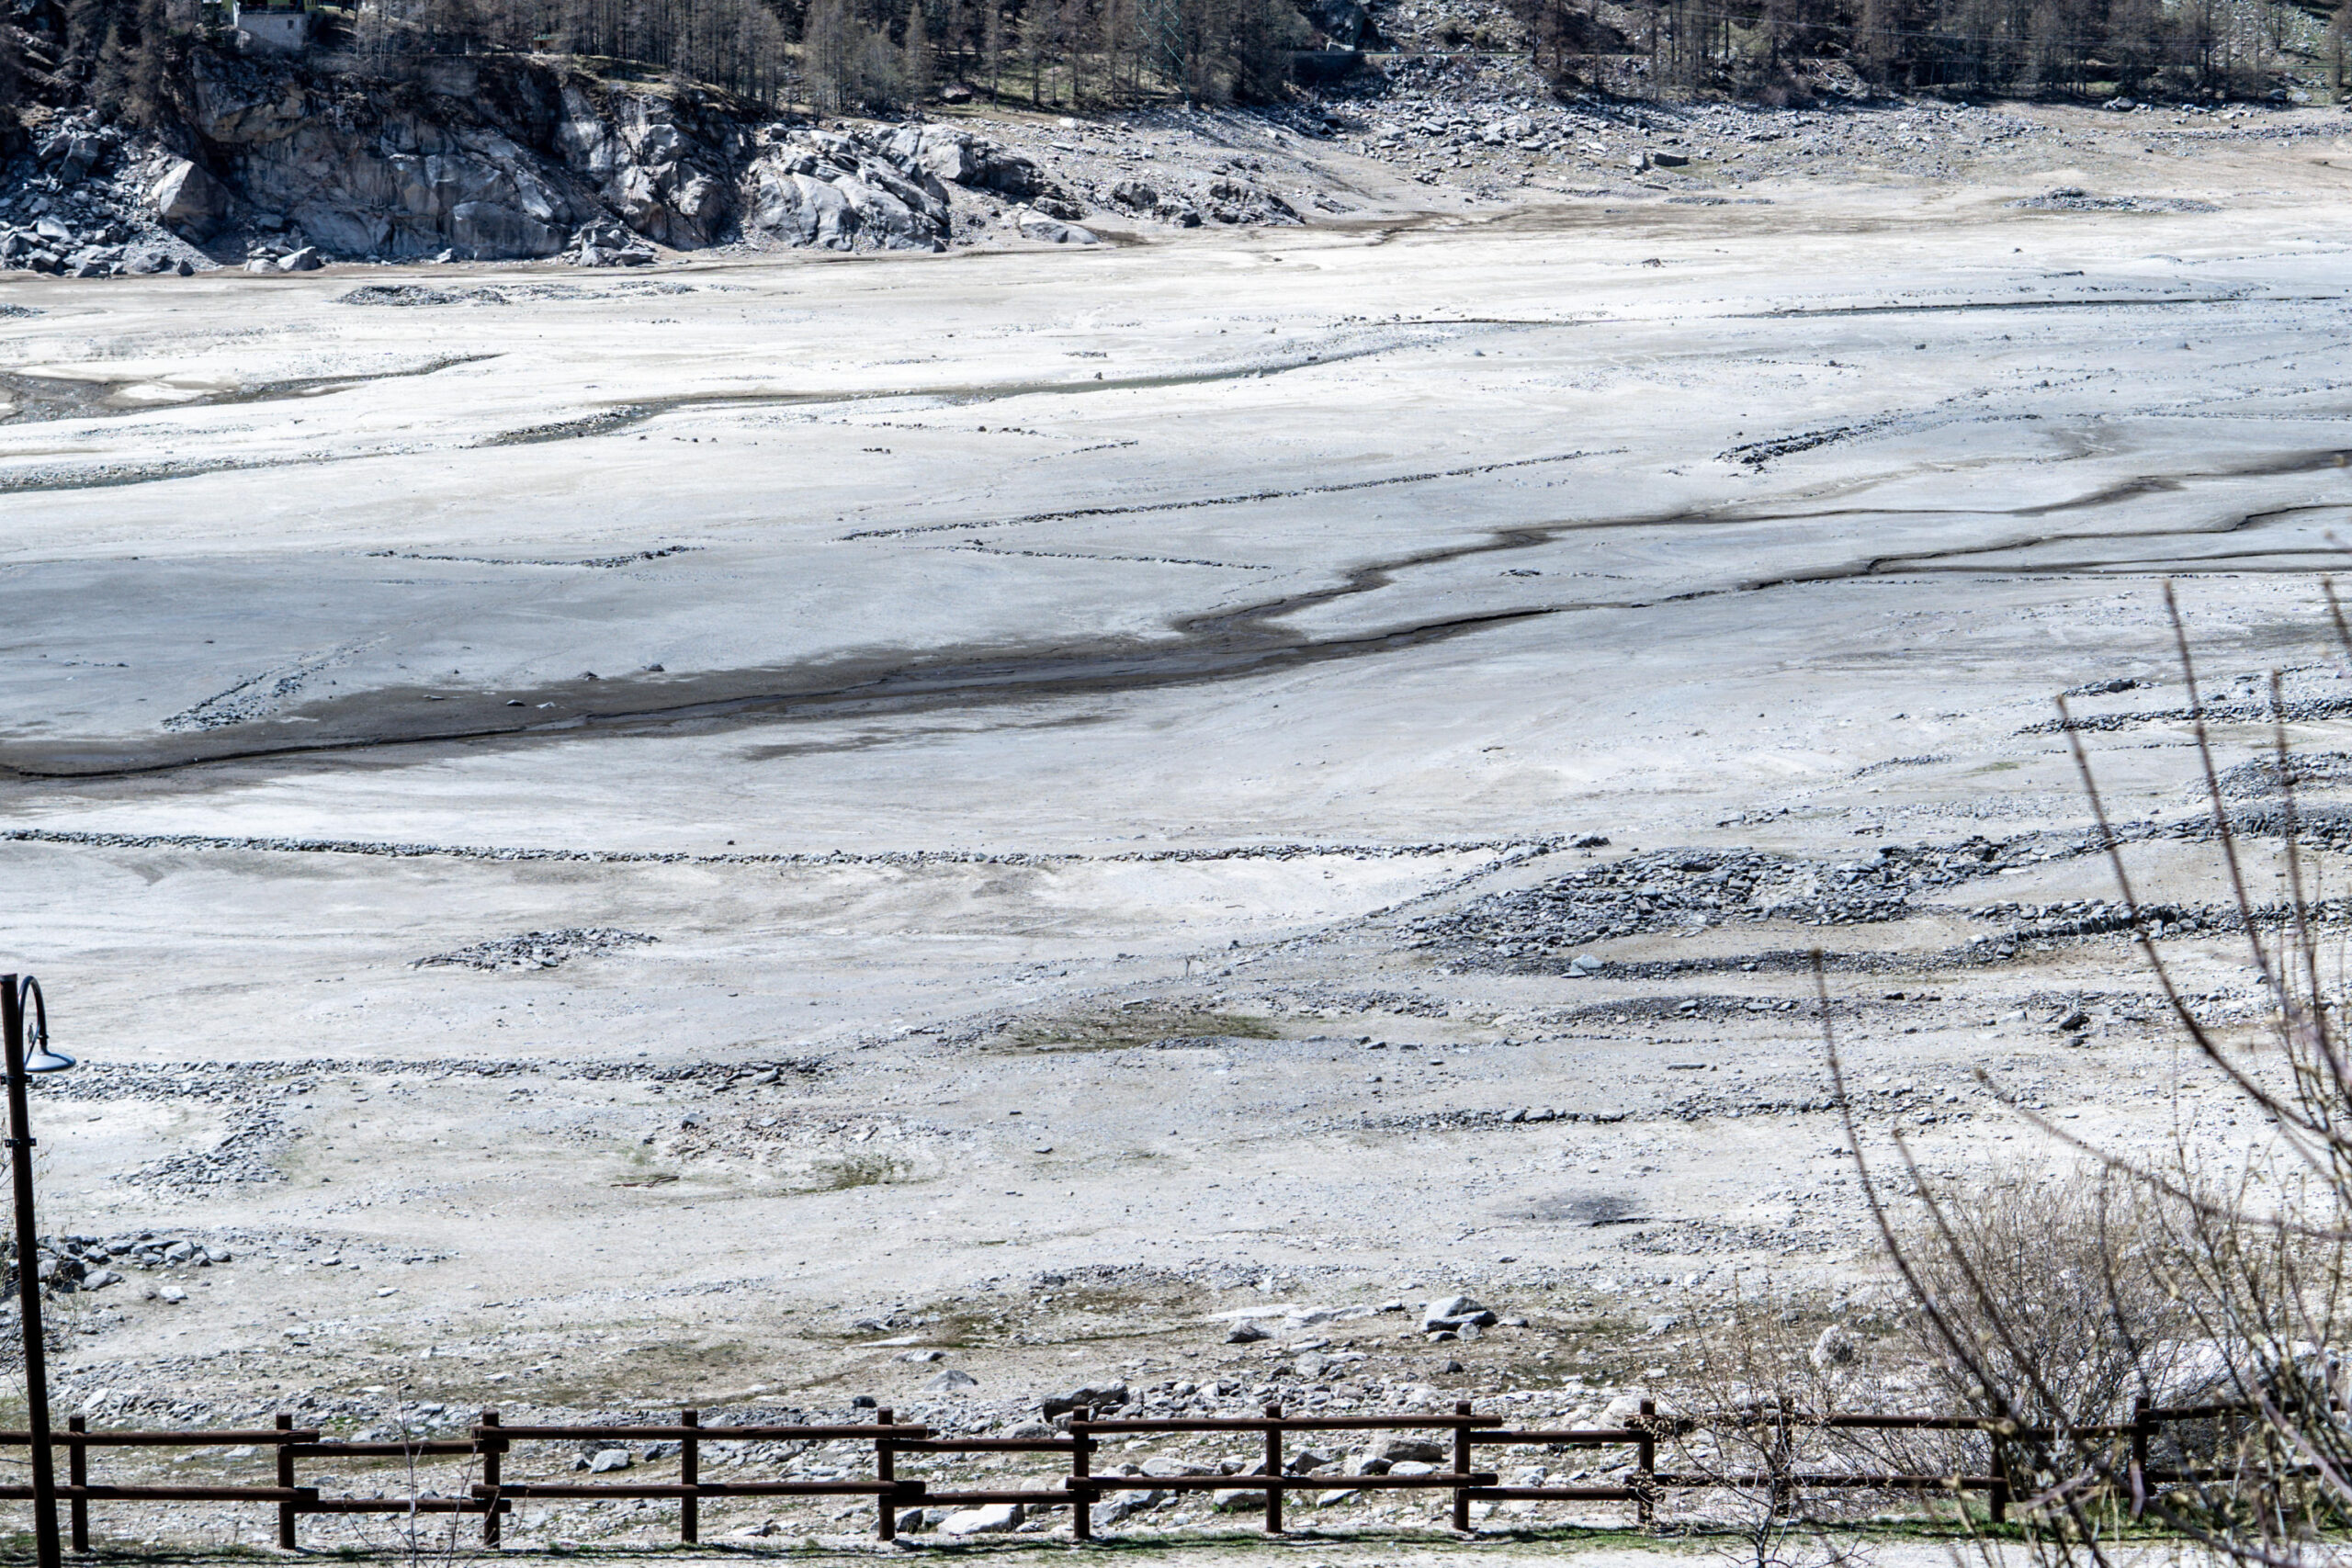 La situazione del lago di Ceresole Reale, in provincia di Torino: un tempo coperto di neve fino a metà aprile, oggi (26 aprile 2023) completamente privo di neve e asciutto in larga parte ANSA/JESSICA PASQUALON